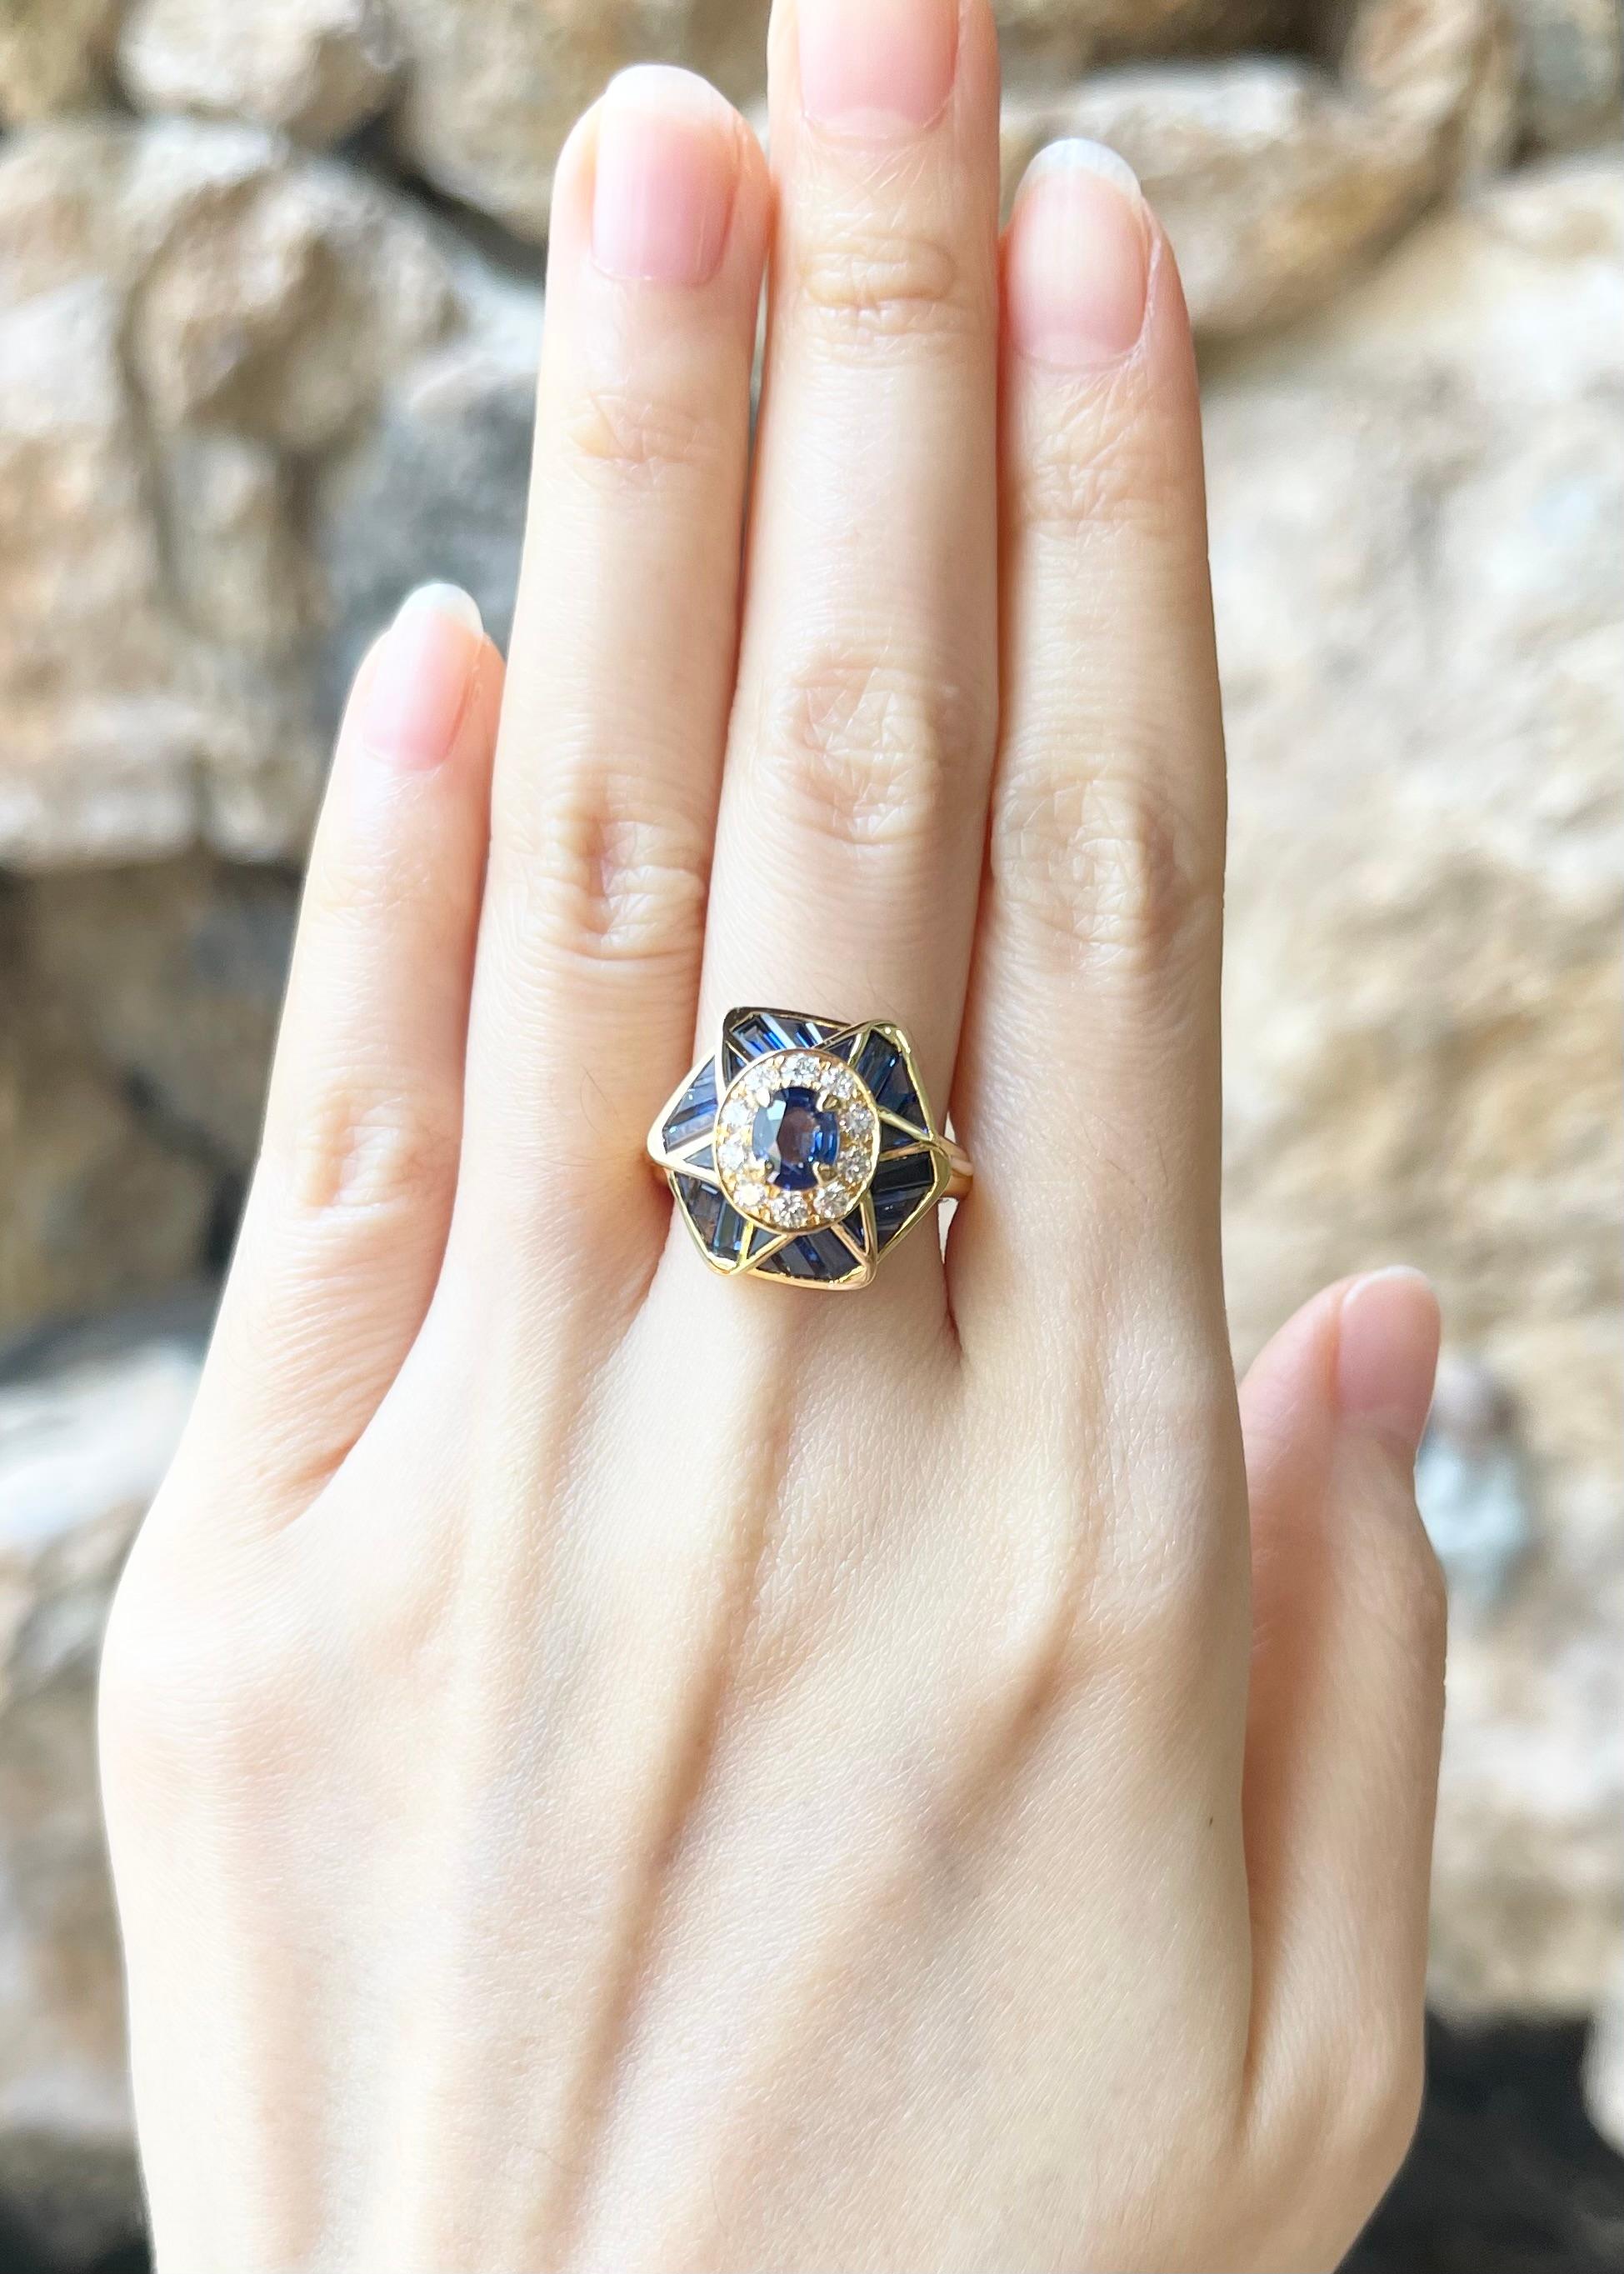 Blauer Saphir 0,75 Karat, blauer Saphir 2,30 Karat und Diamant 0,35 Karat Ring in 18K Goldfassung

Breite:  2.3 cm 
Länge: 2.2 cm
Ringgröße: 54
Gesamtgewicht: 8,24 Gramm

